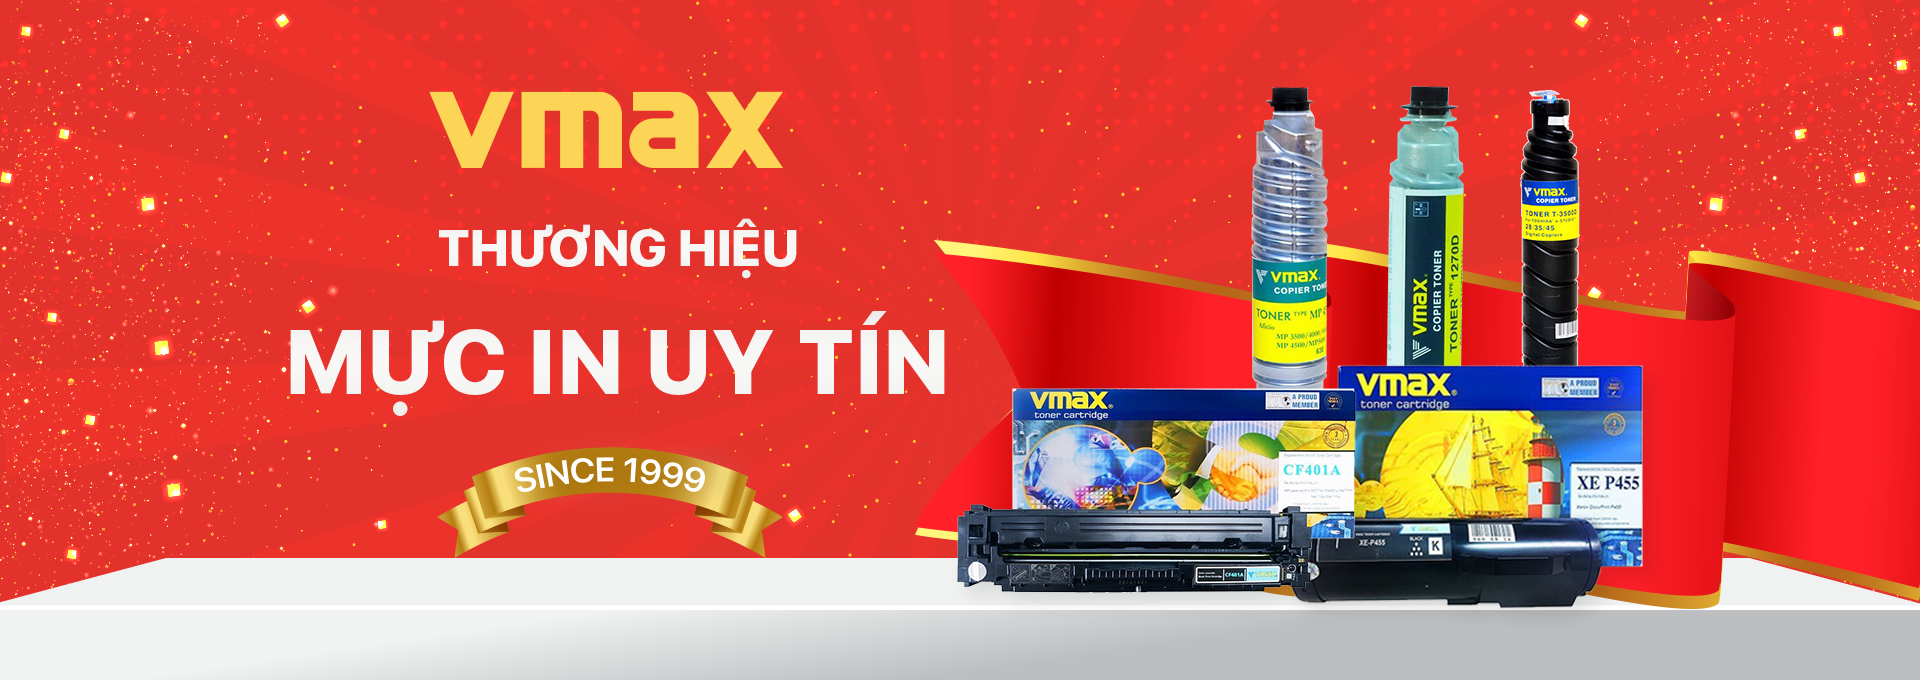 Mực in Vmax - Thương hiệu số 1 Việt Nam